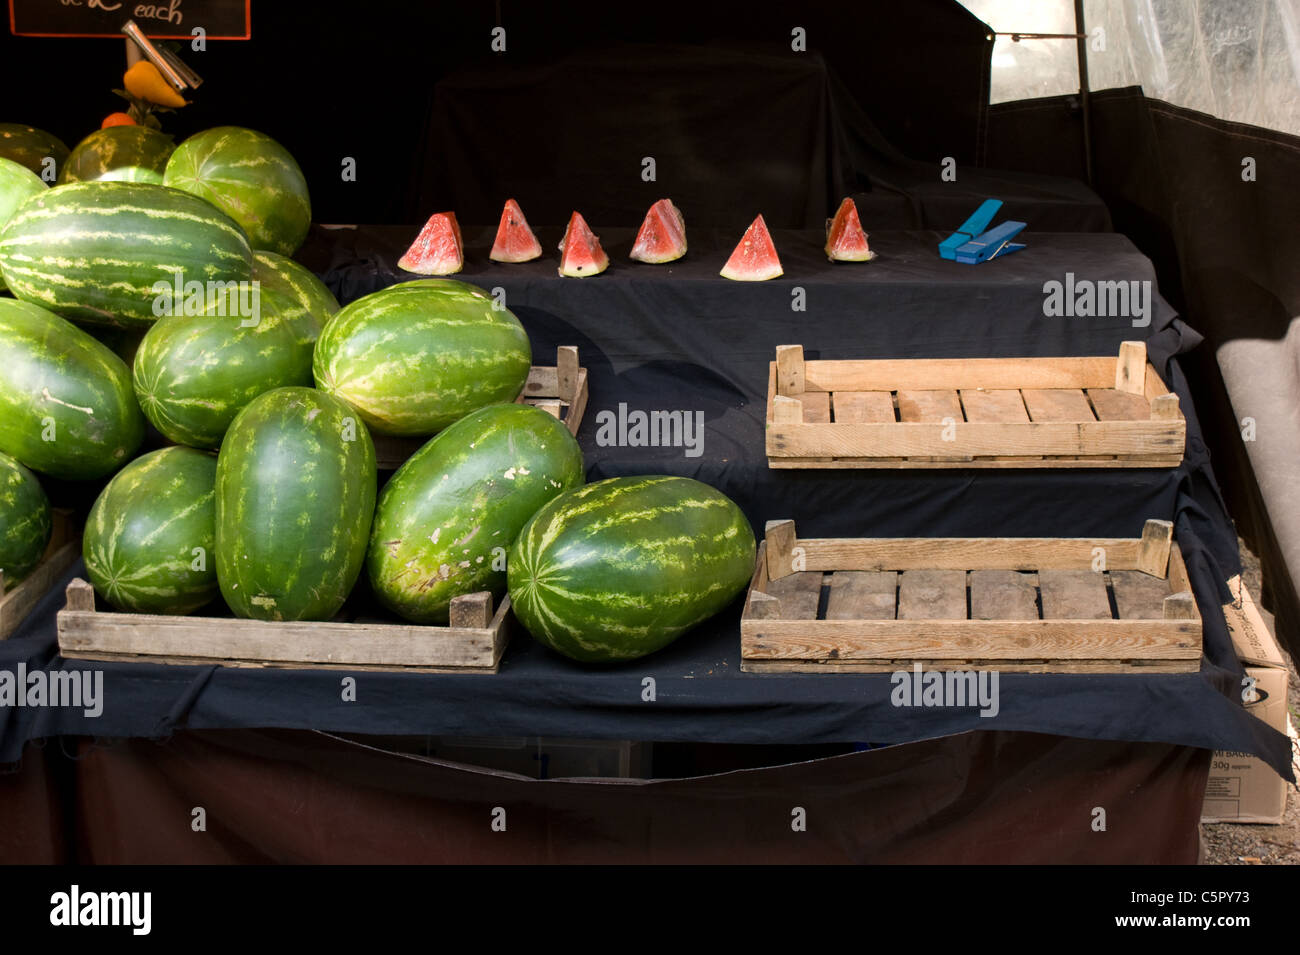 Les melons d'eau douce à vendre Banque D'Images